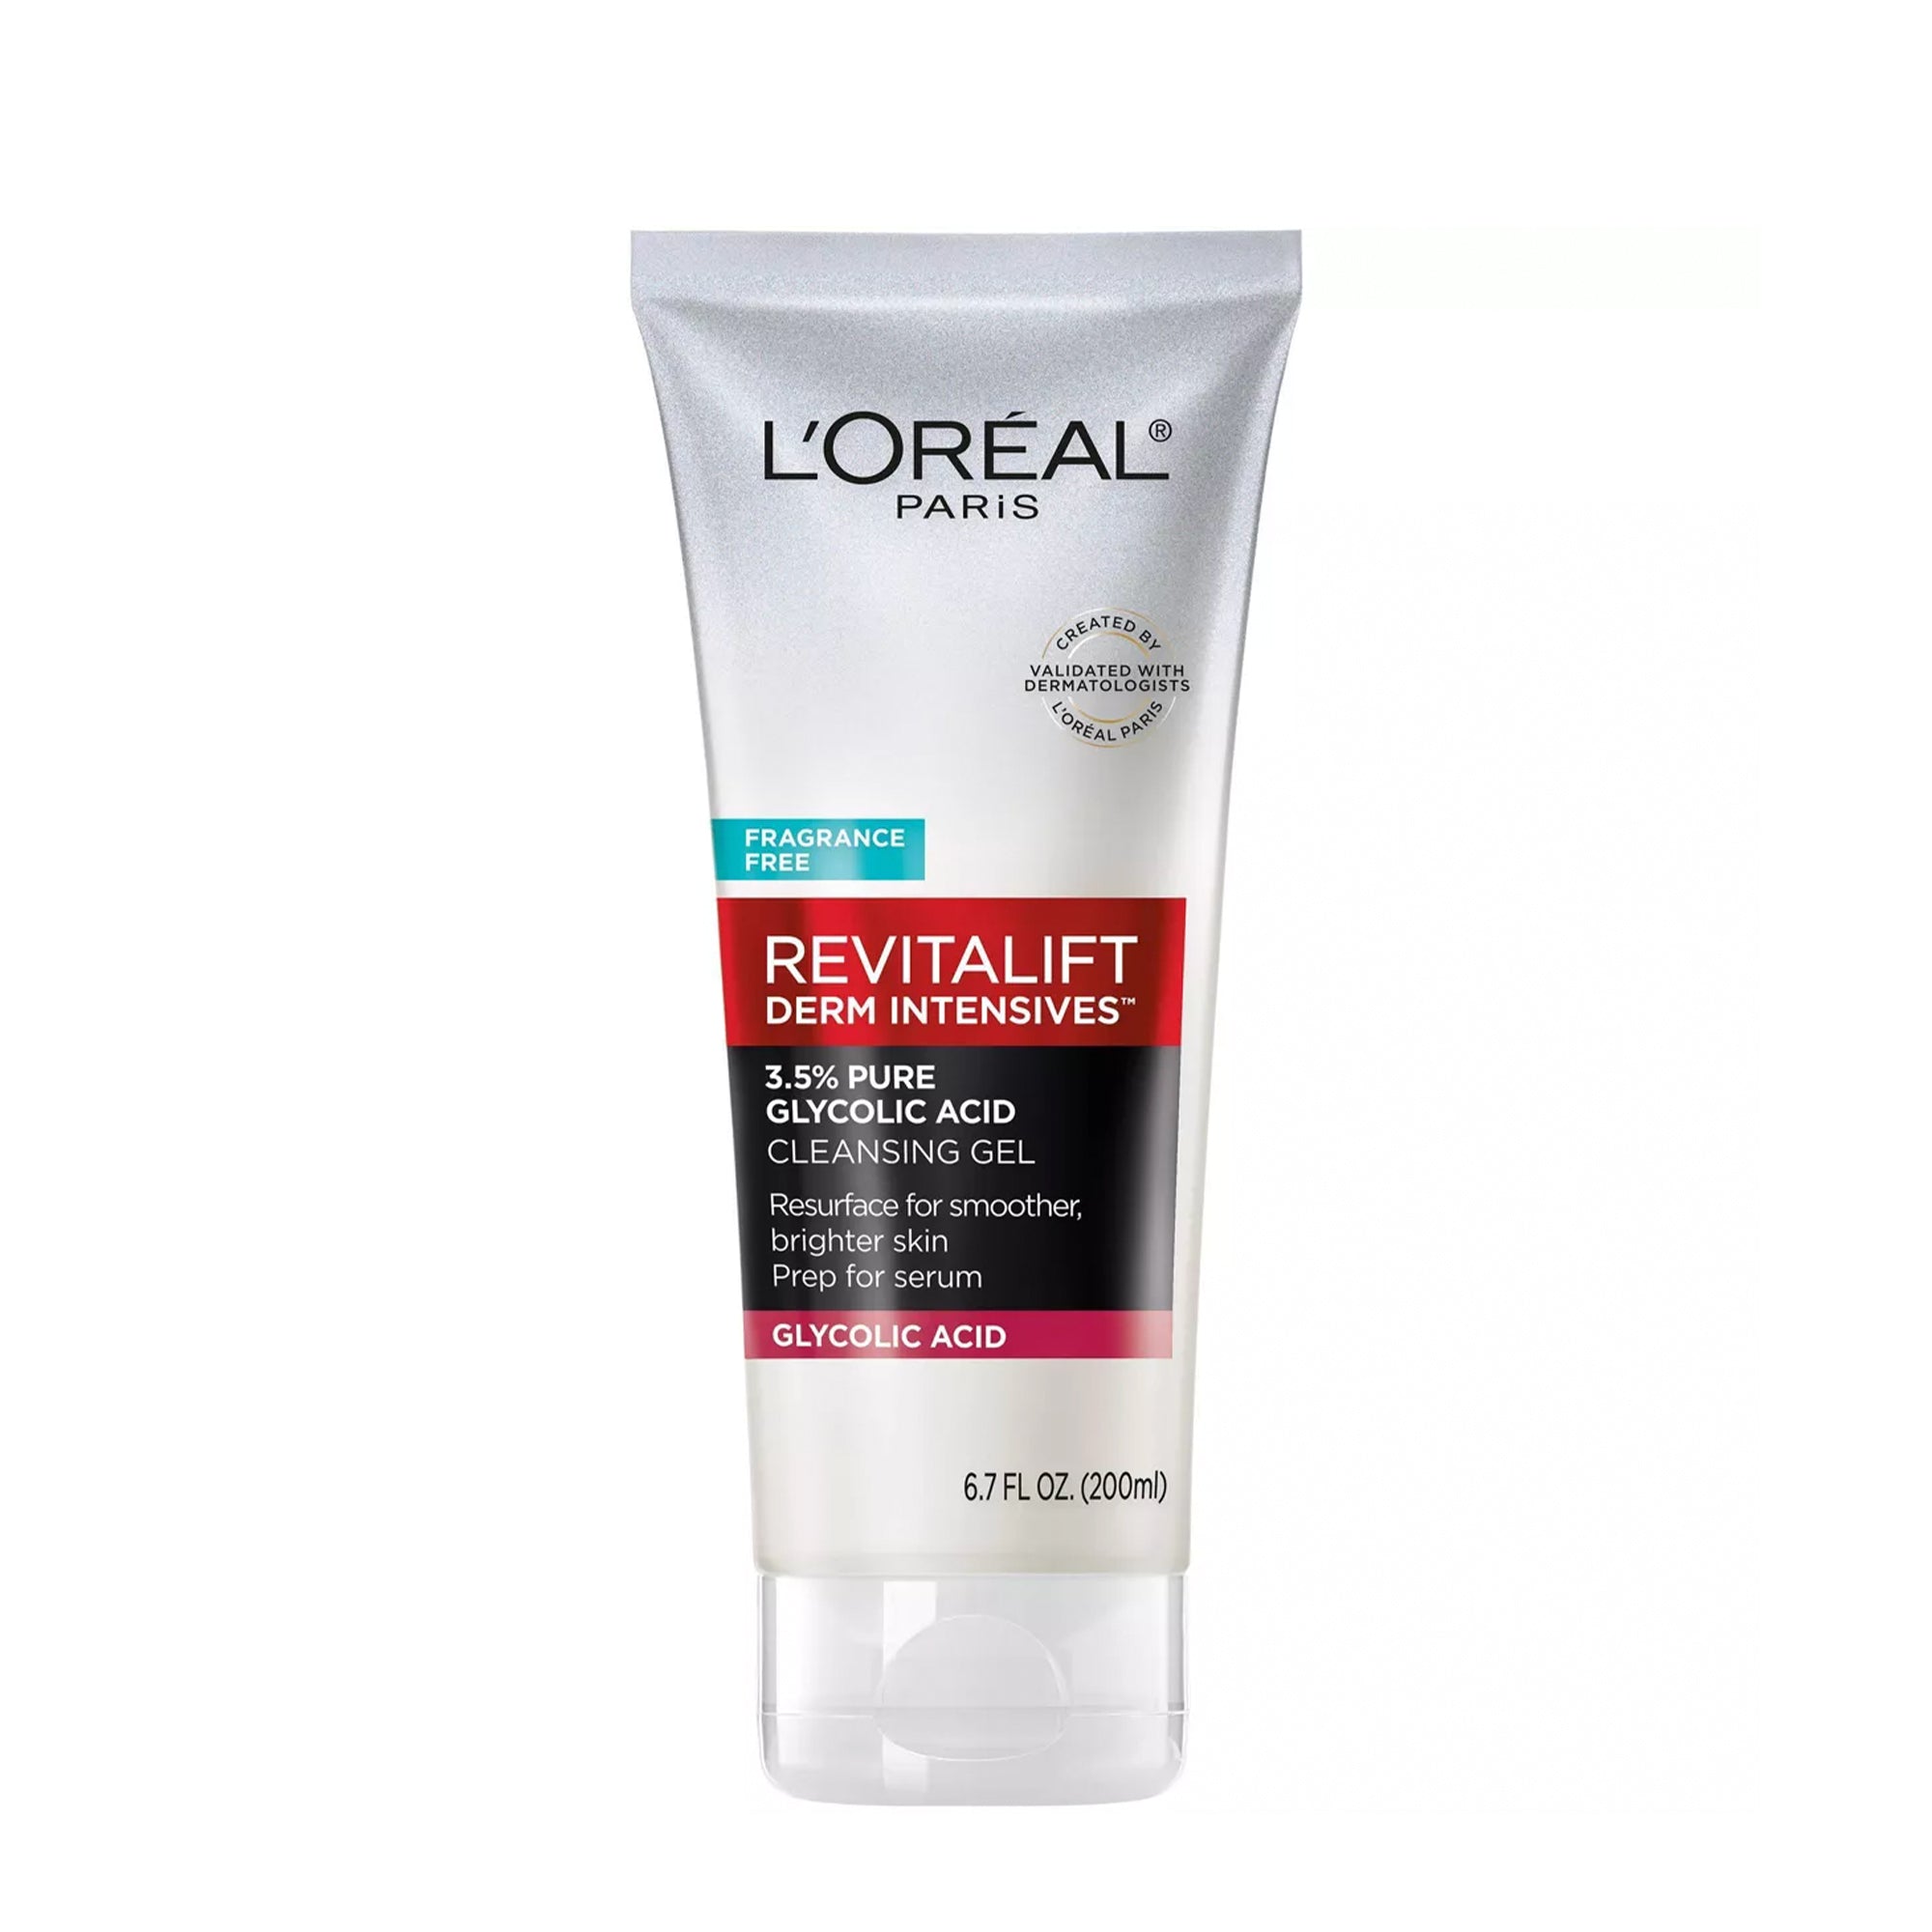 L'Oreal Paris Revitalift Derm Intensives with 3.5% Glycolic Acid Cleanser, 6.7 fl oz